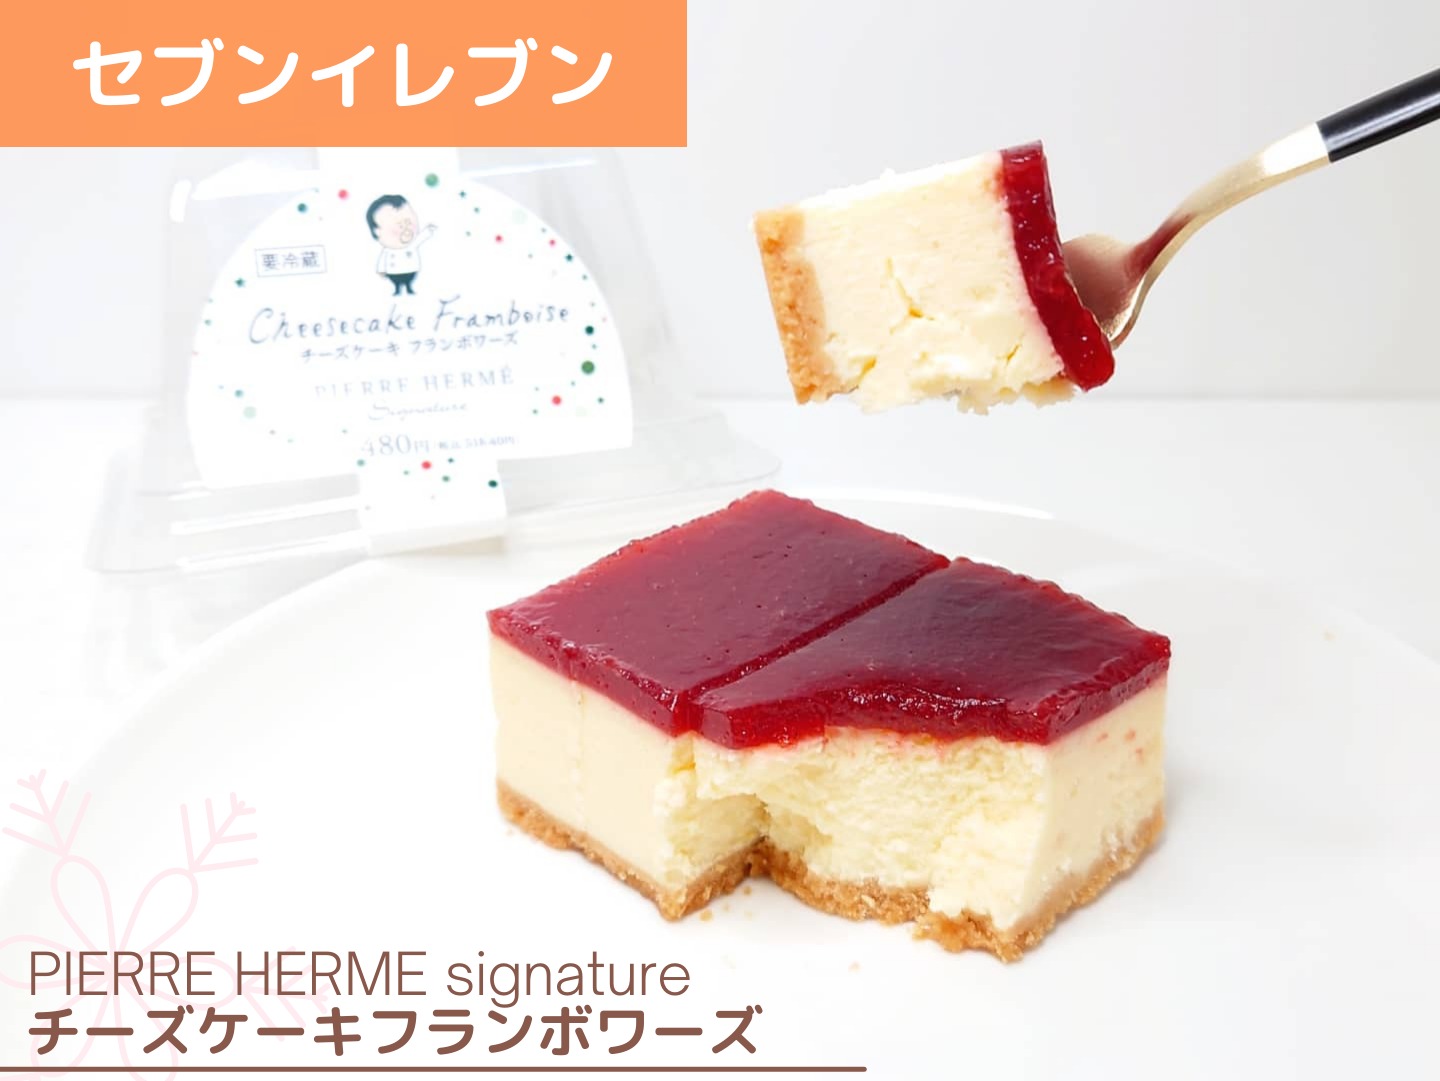 PIERRE HERME Signature チーズケーキ フランボワーズ